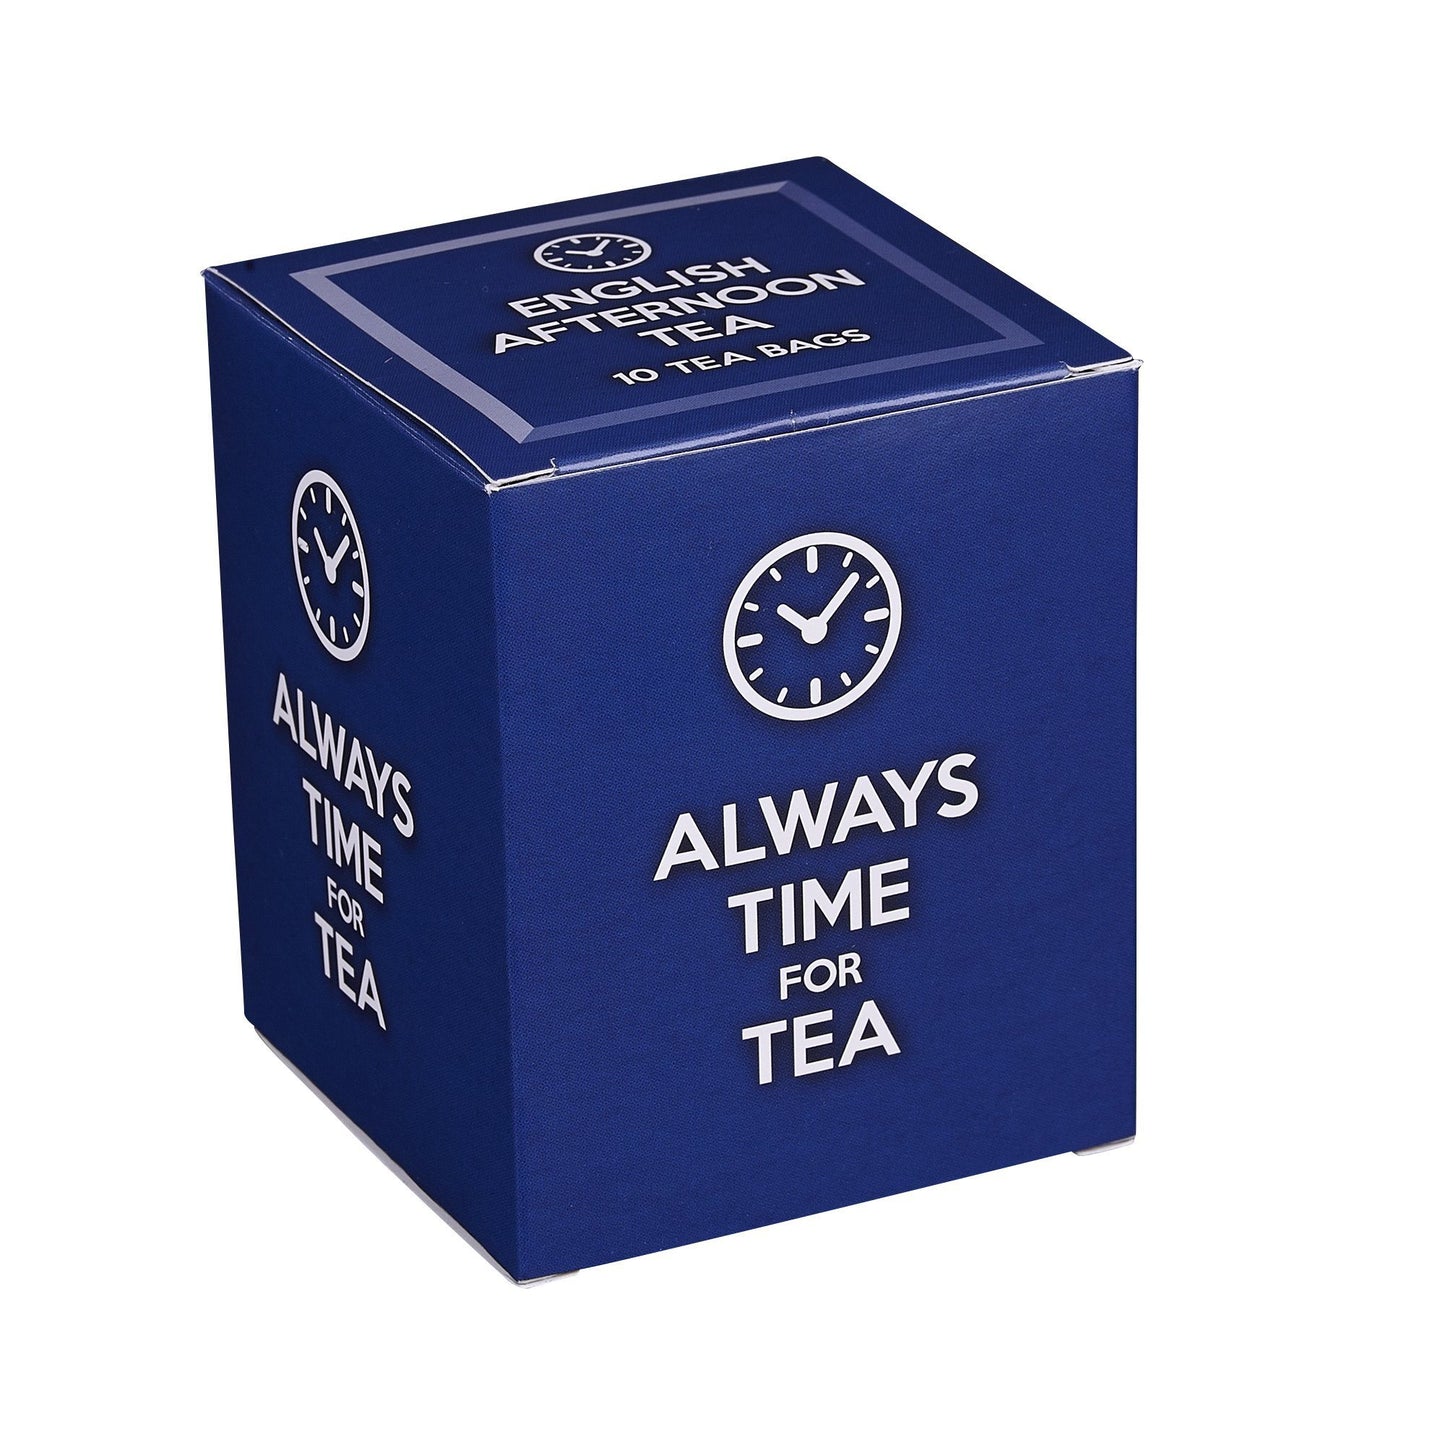 New English Teas Always Time For Tea Carton 10 Teabags Black Tea New English Teas 